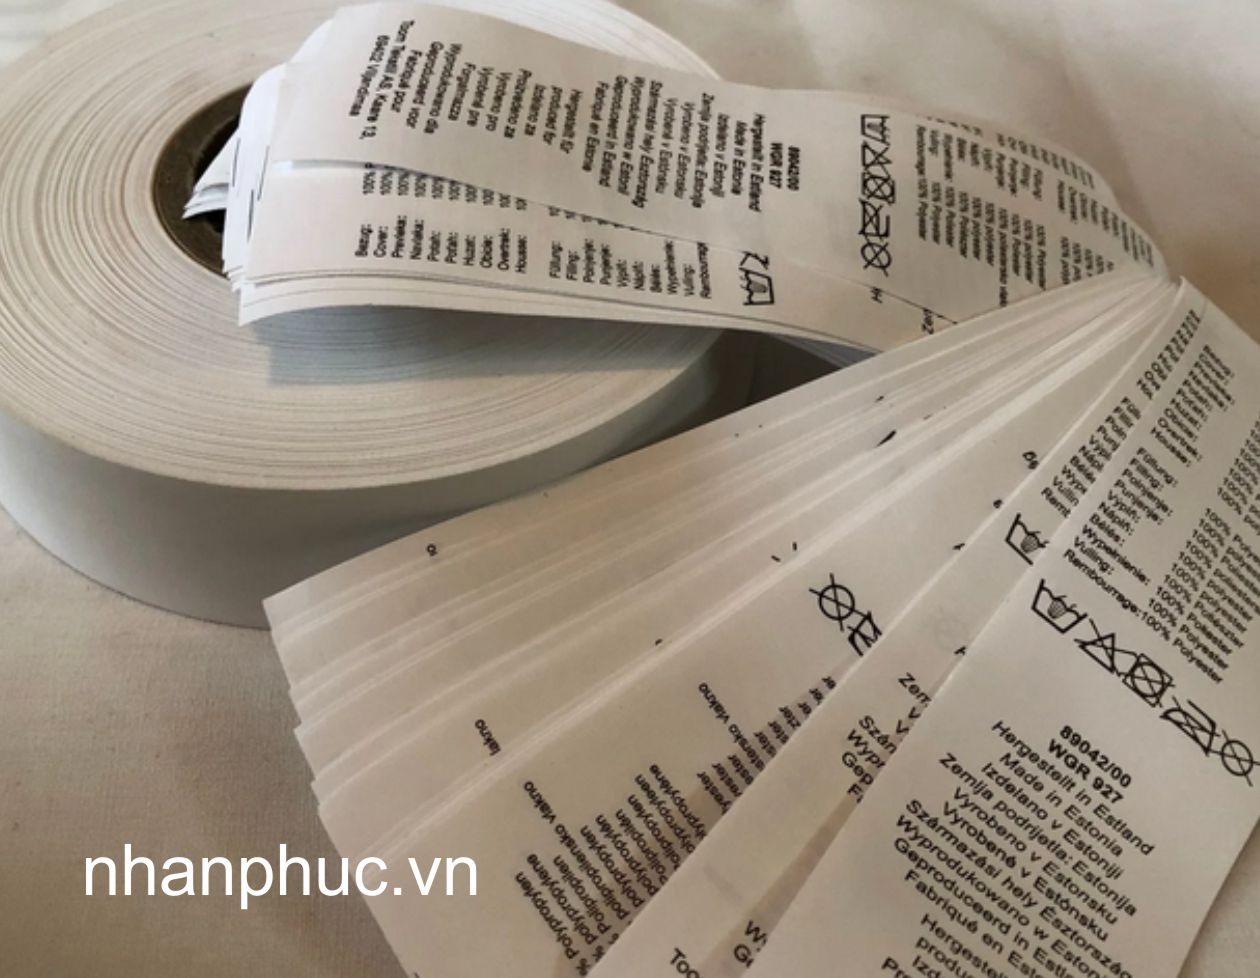 Tag mác quần áo vải nylon Nhân Phúc in giá rẻ ở tại Hà Nội